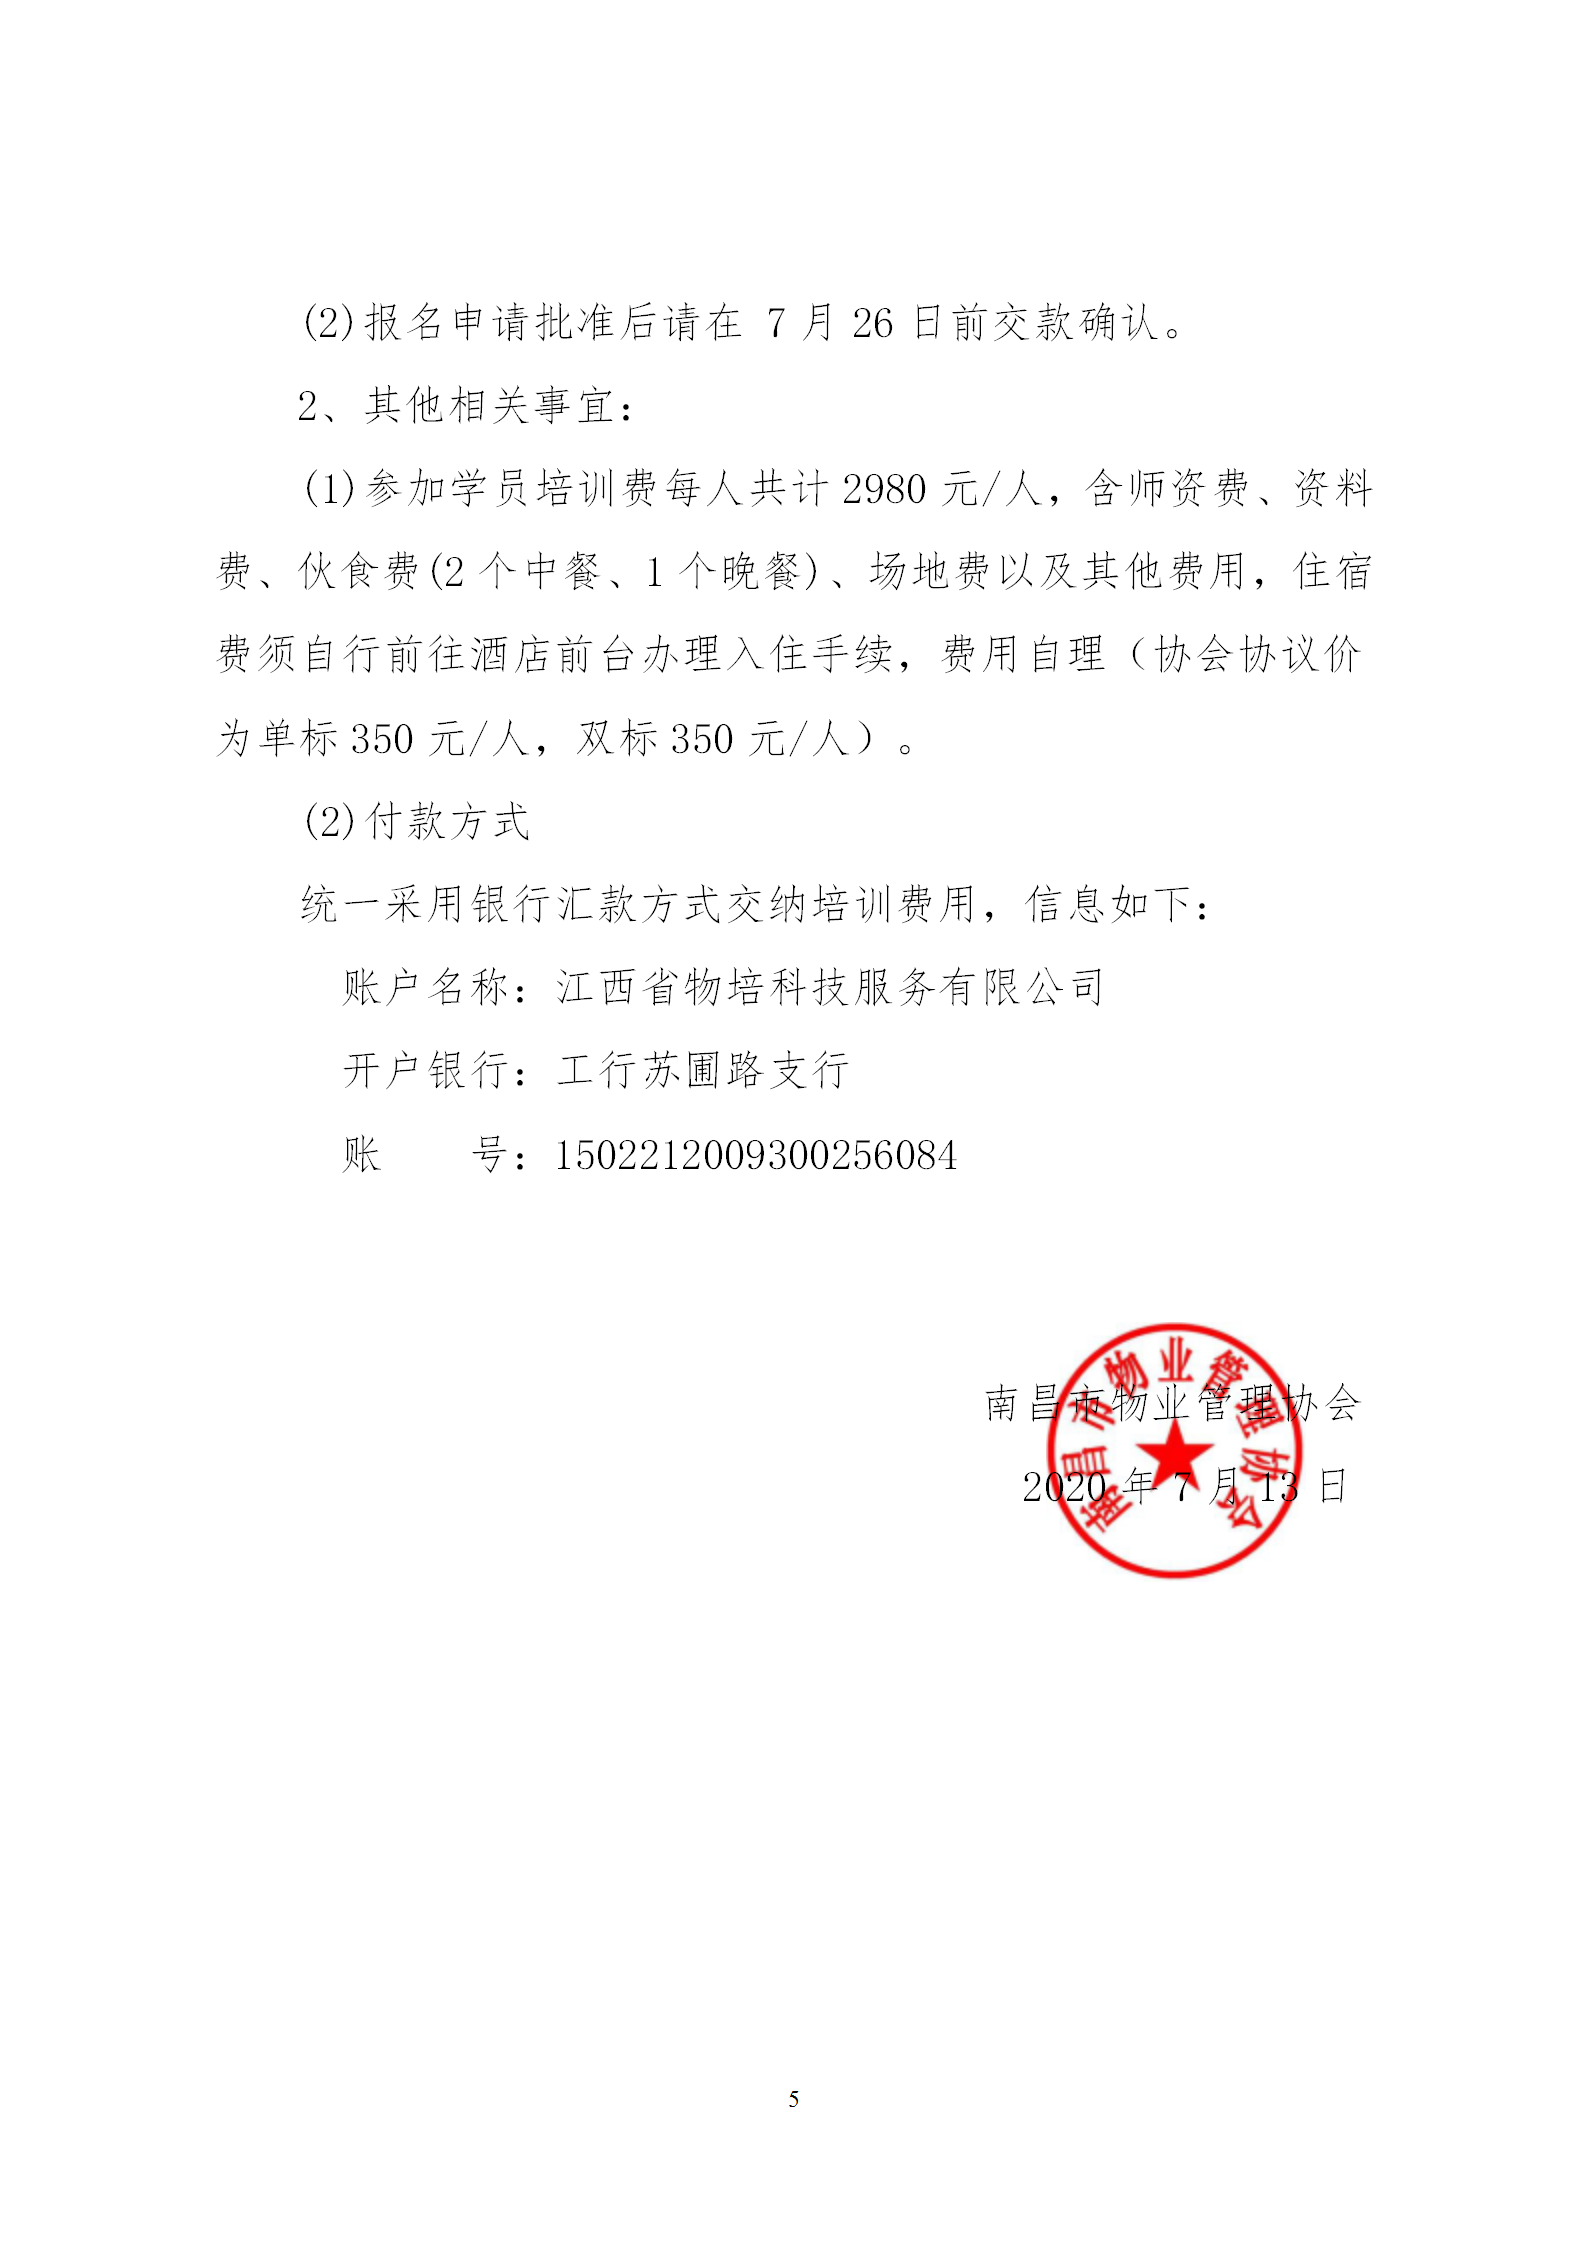 洪物协字[2020]13号关于举办南昌市物业管理行业专家高级研修班的通知_05.png